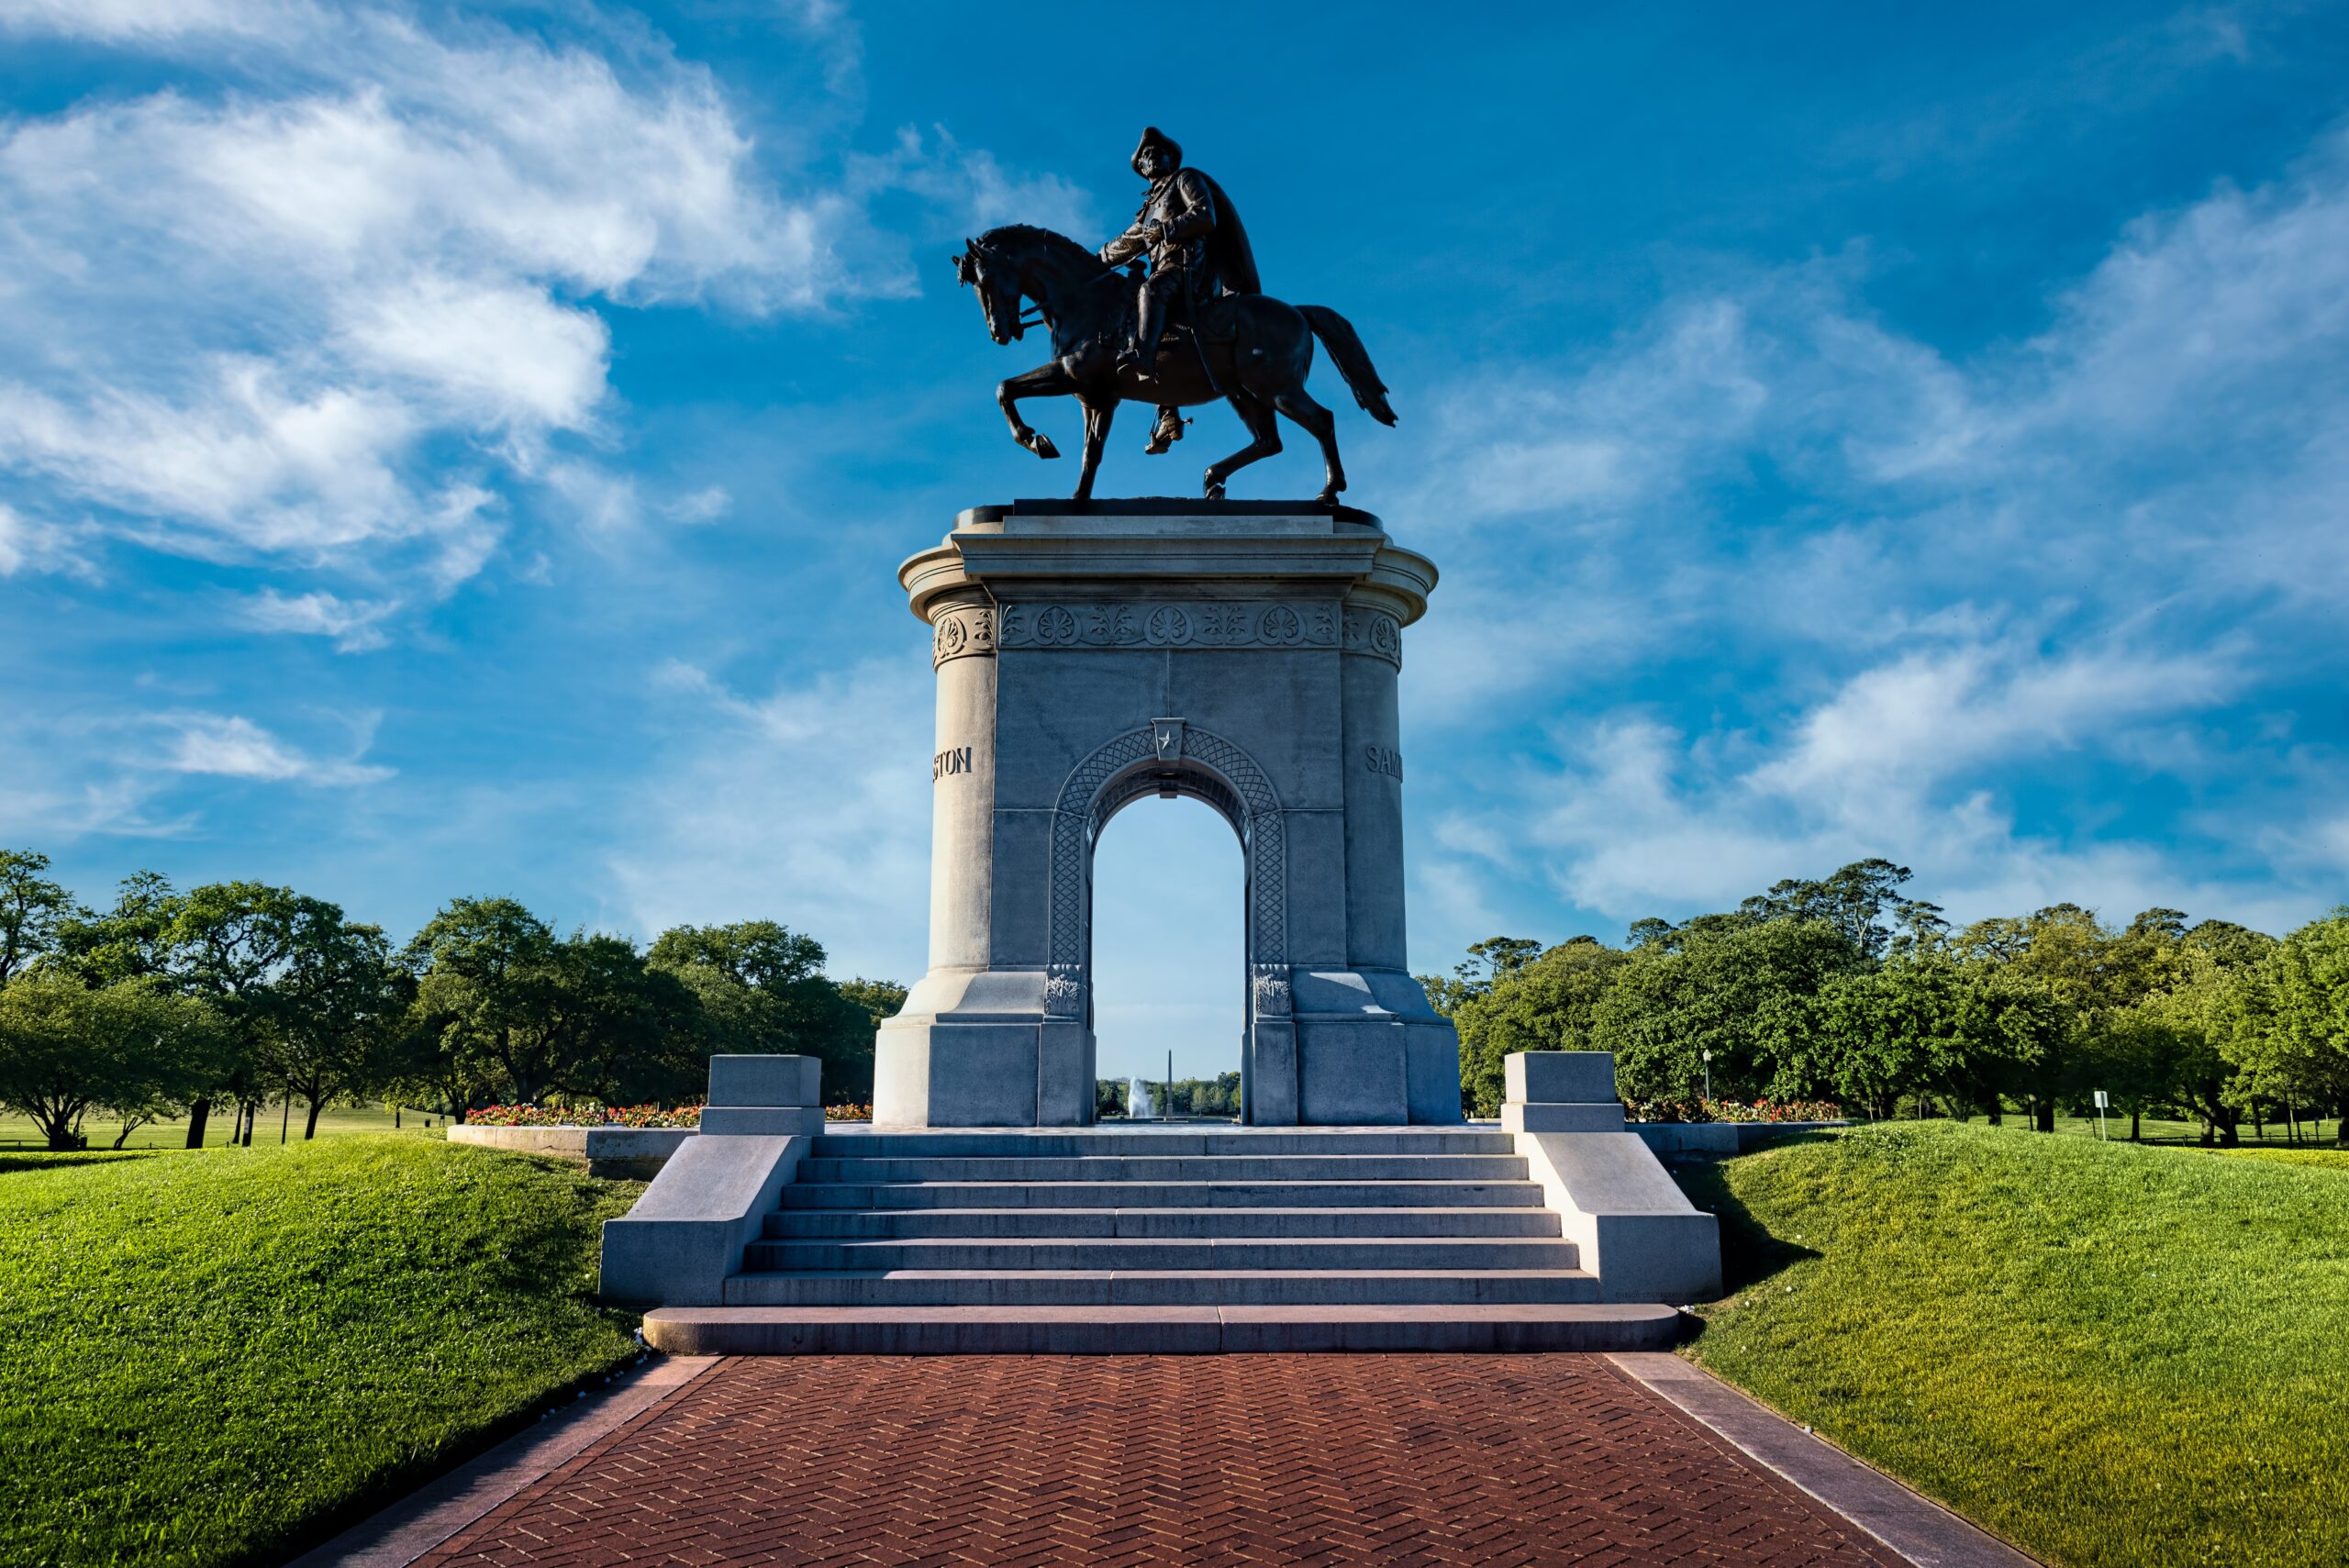 Statue of General Sam Houston in Hermann Park in Houston, Texas.